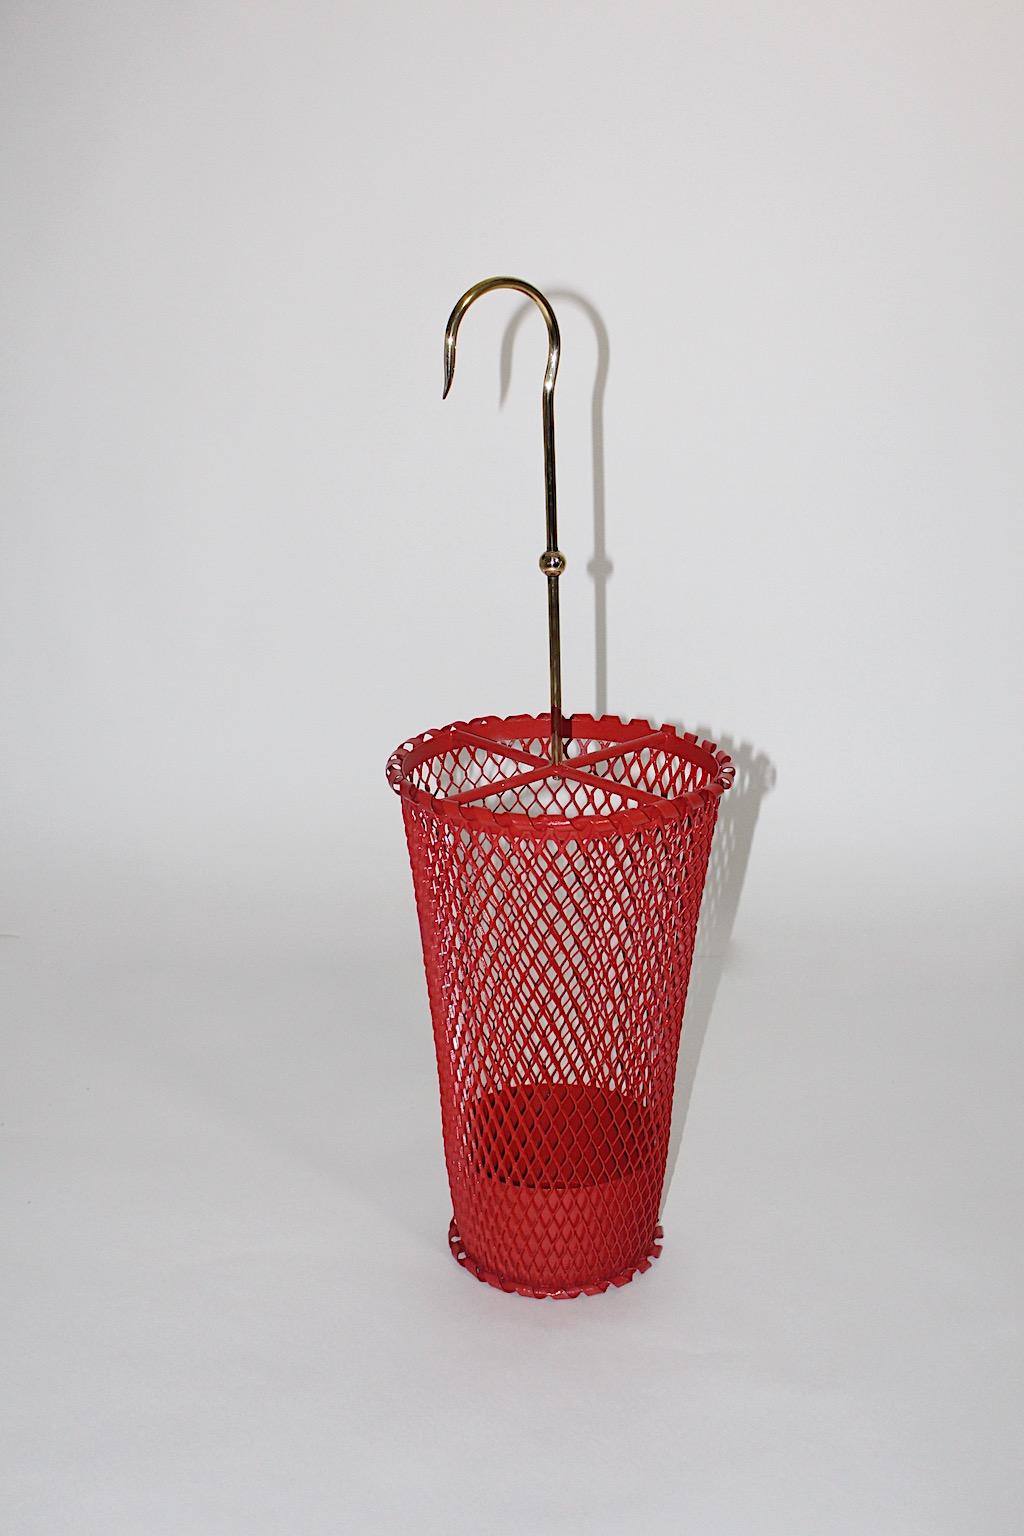 Moderner Vintage-Schirmständer aus Rotguss von Mathieu Matégot für Ateliers Matégot, Frankreich, 1950er Jahre.
Ein toller Schirmständer aus rot lackiertem Metall und Messing.
Dieser Schirmständer im Vintage-Stil verfügt über ein neu rot lackiertes